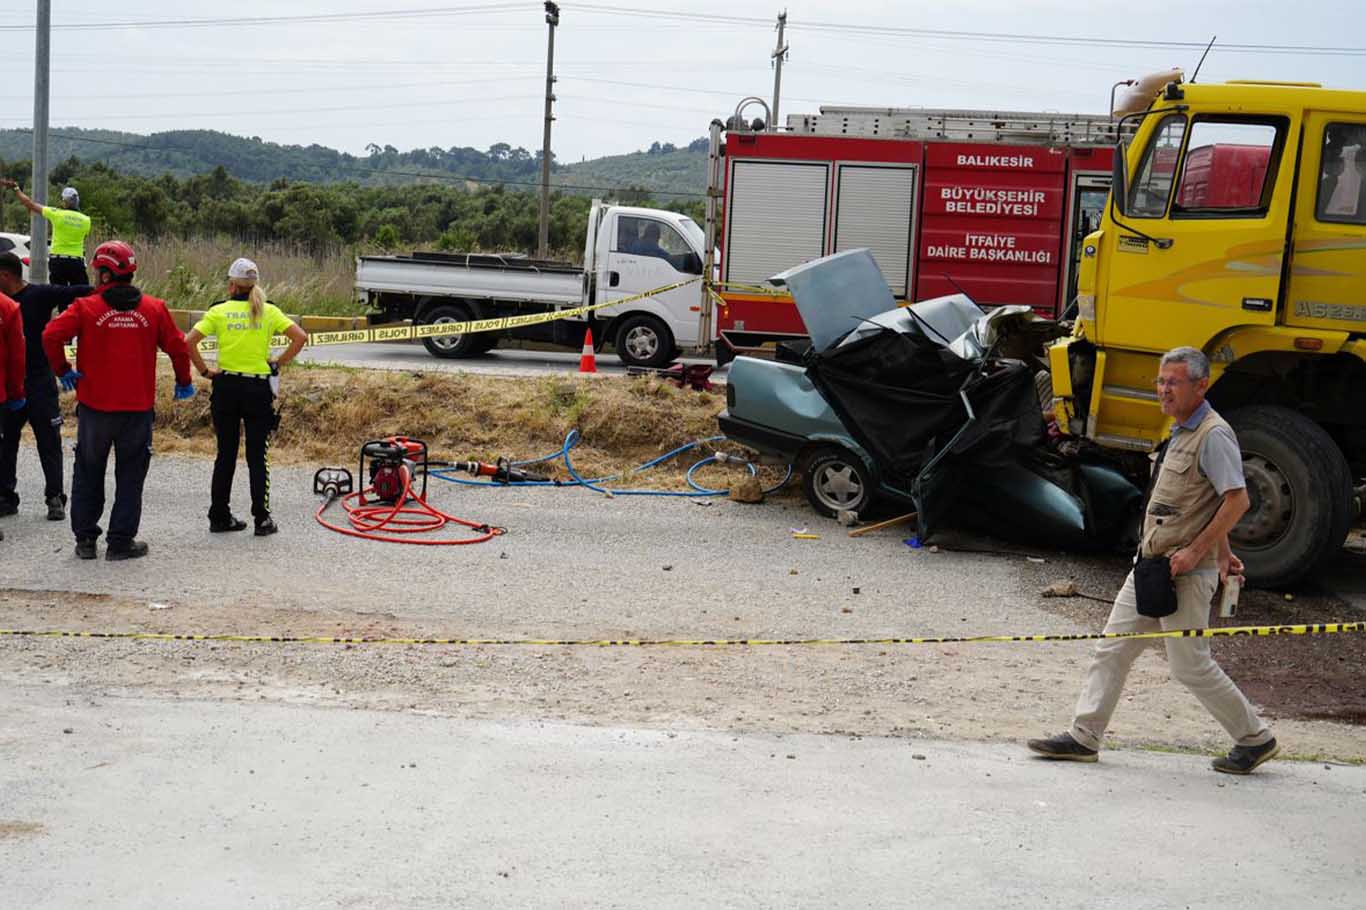 Balıkesir İzmir Yolunda Trafik Kazası 3 Ölü, 1 Yaralı 3